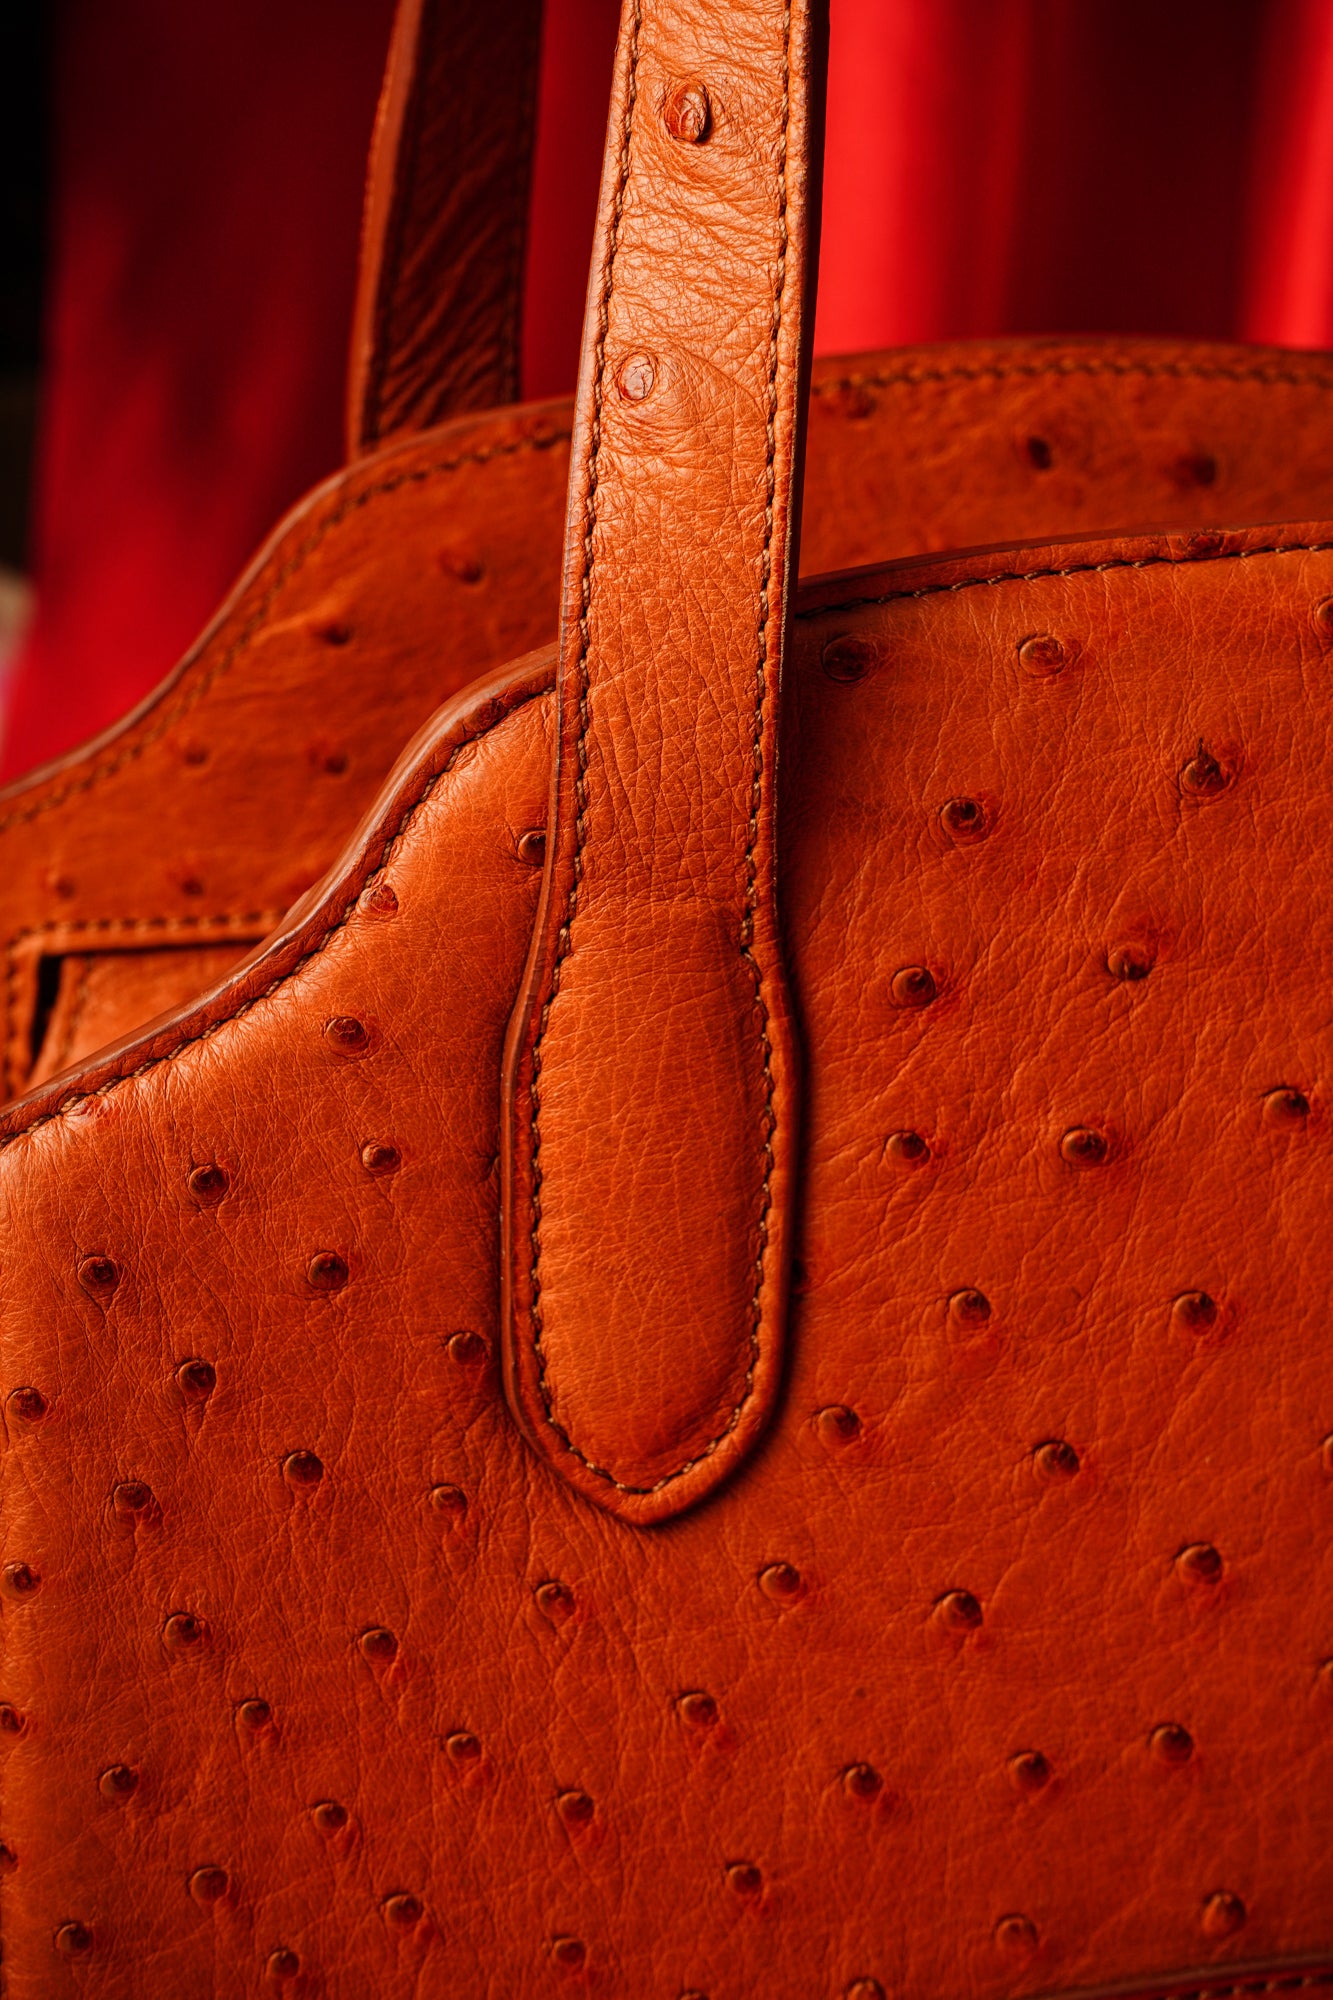 Caddy ostrich leather handbag